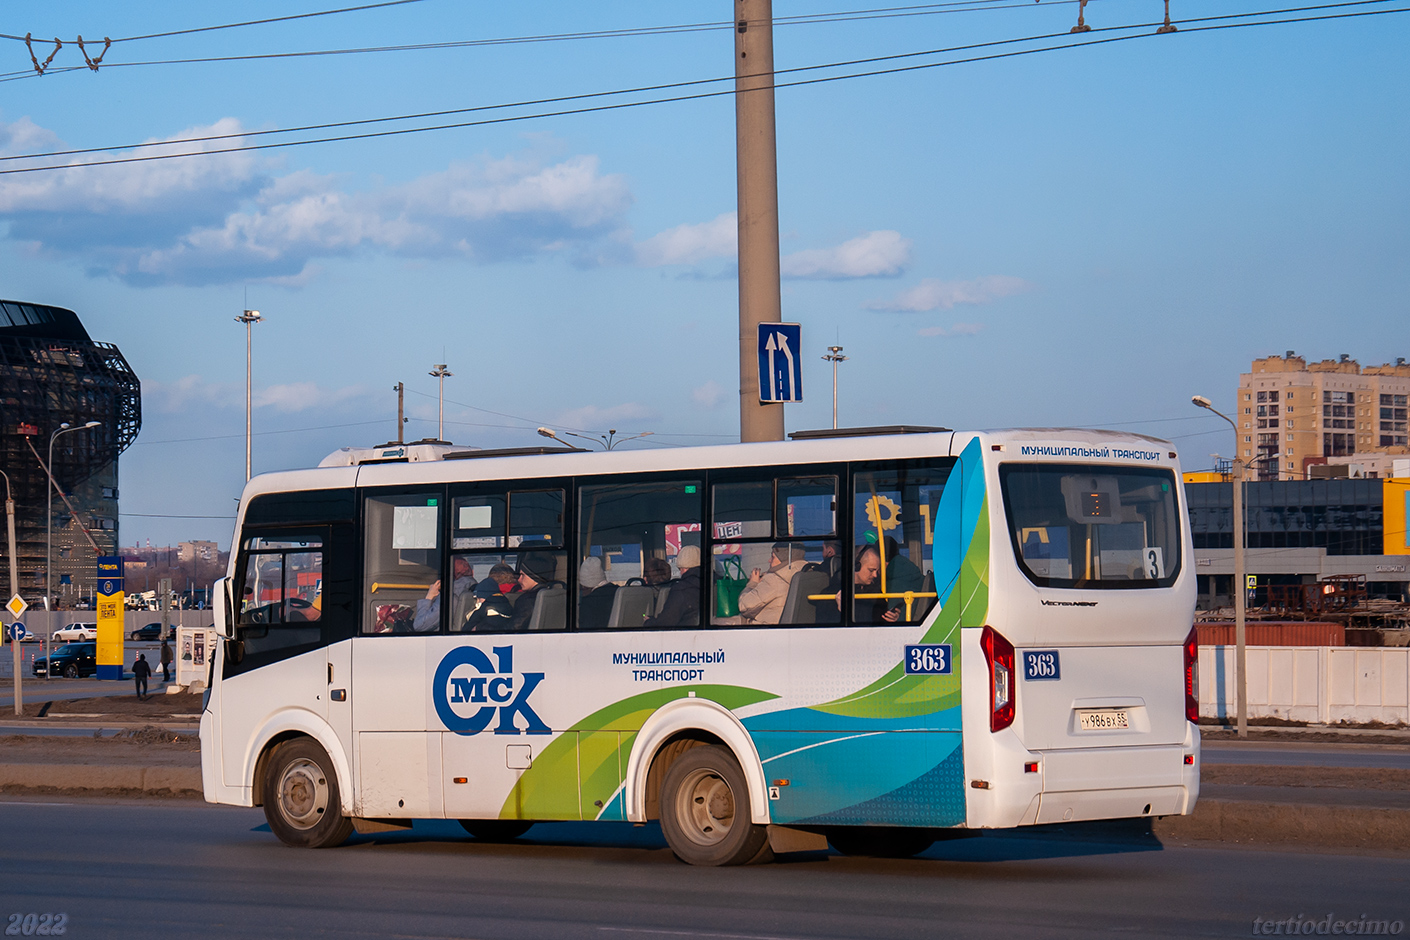 Omsk region, PAZ-320435-04 "Vector Next" č. 363